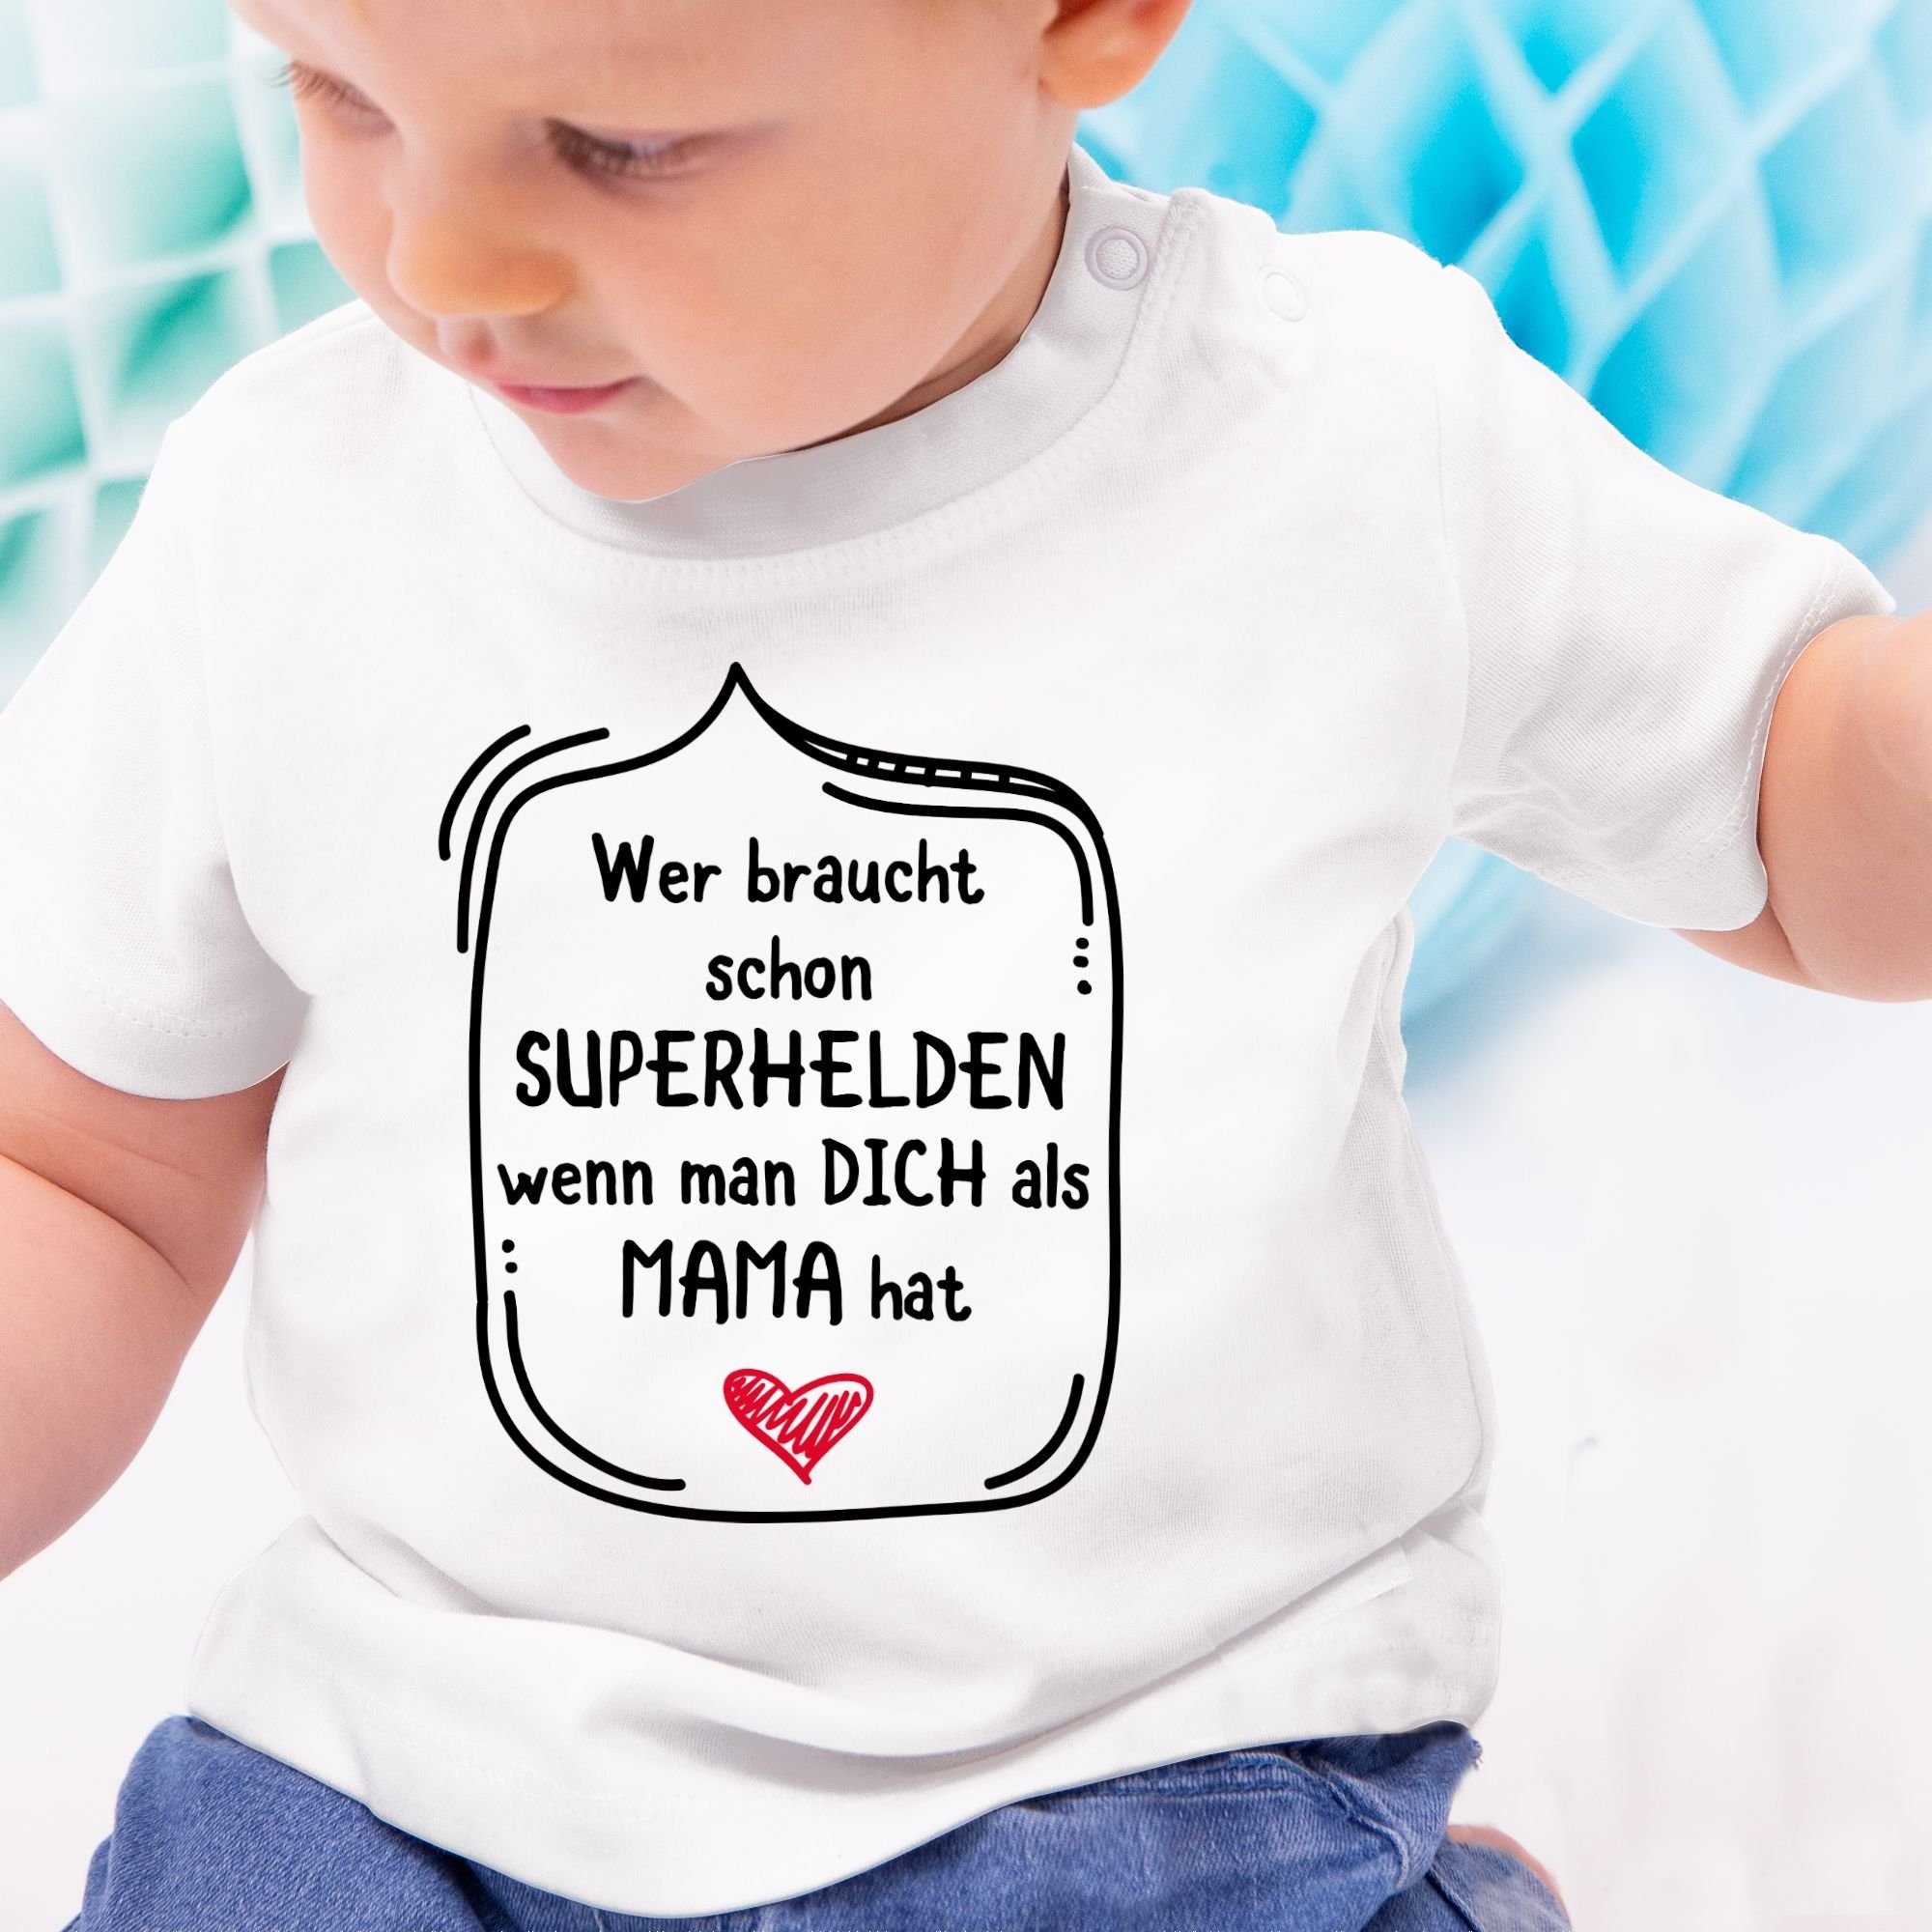 Shirtracer T-Shirt Wer braucht schon Muttertagsgeschenk als Mama dich 1 man Superhelden Weiß wenn hat